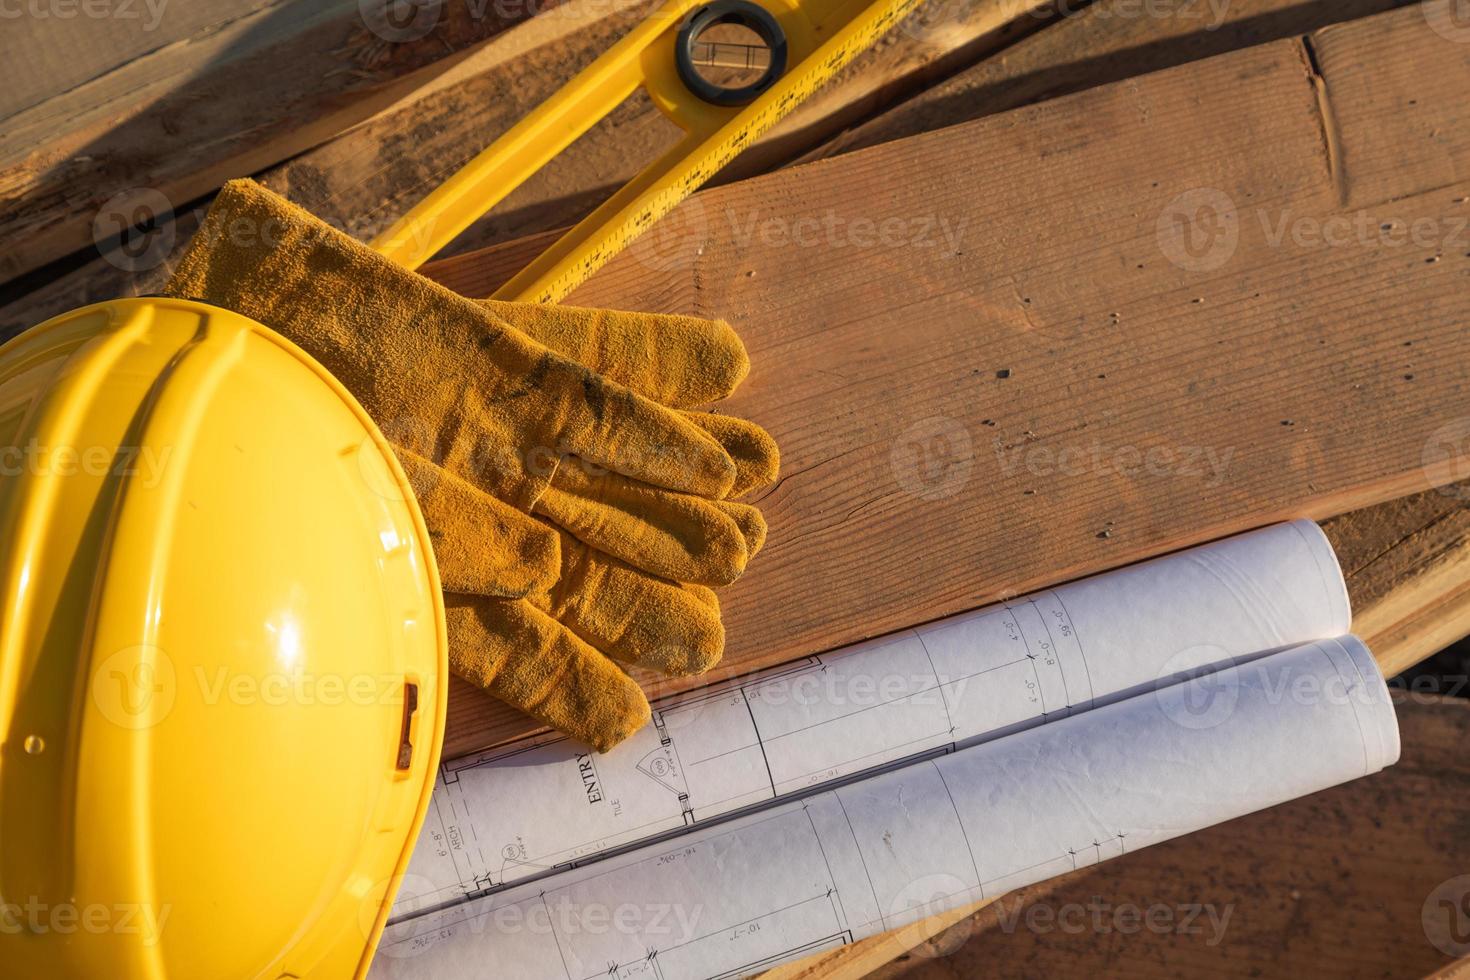 resumen de la construcción de cascos, guantes, nivel y planos de la casa descansando sobre tablones de madera foto